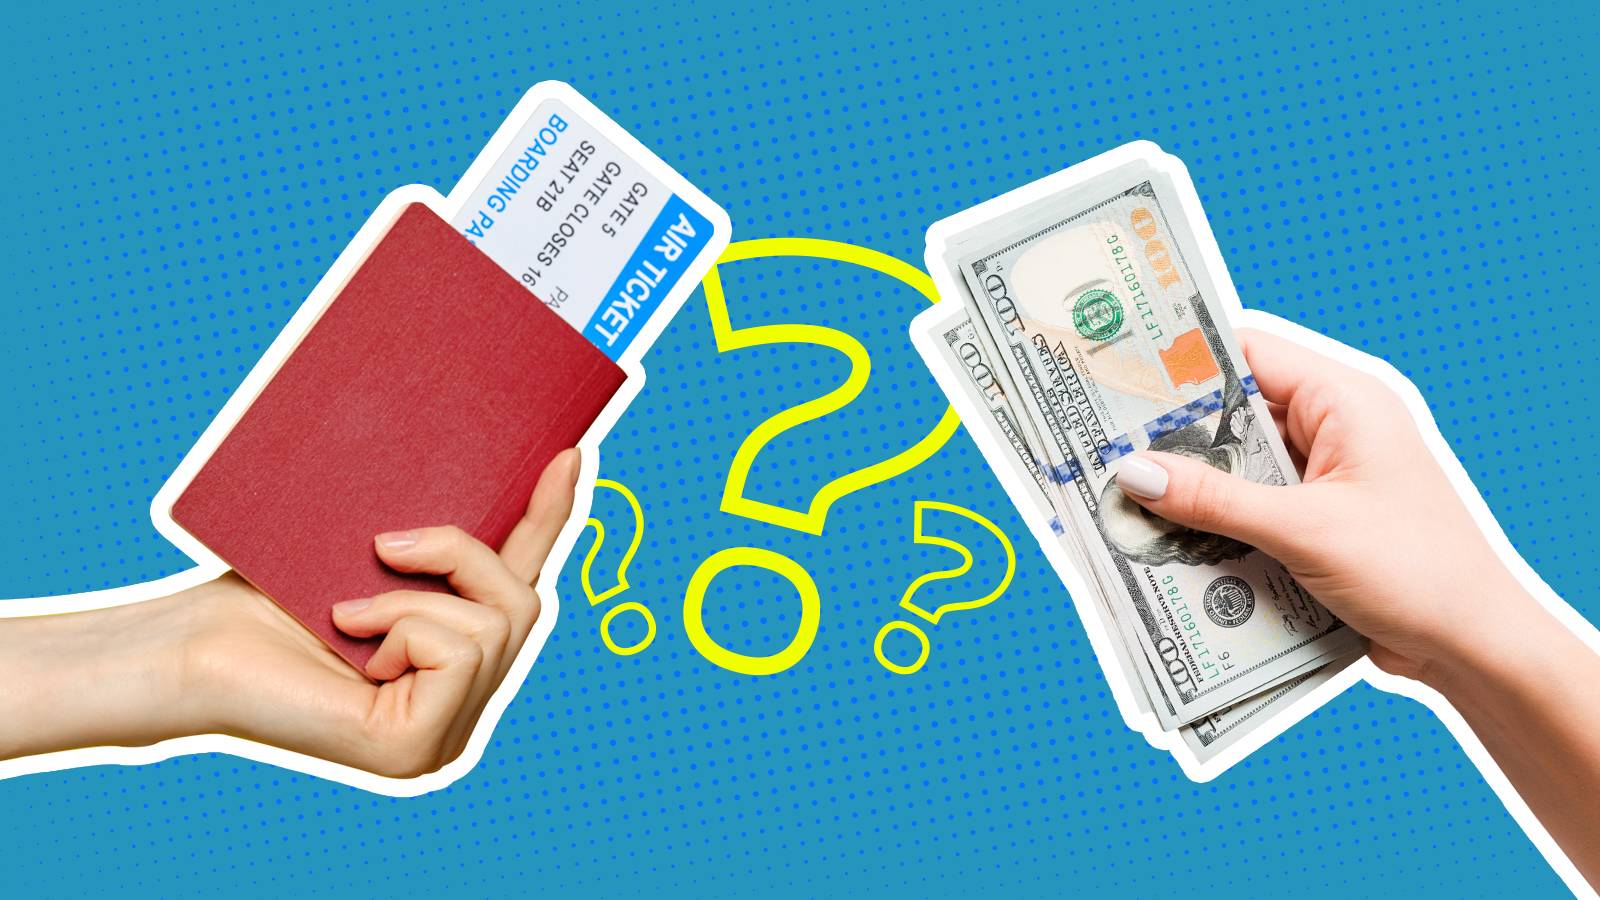 Как вернуть деньги за путевку в турцию или перенести поездку